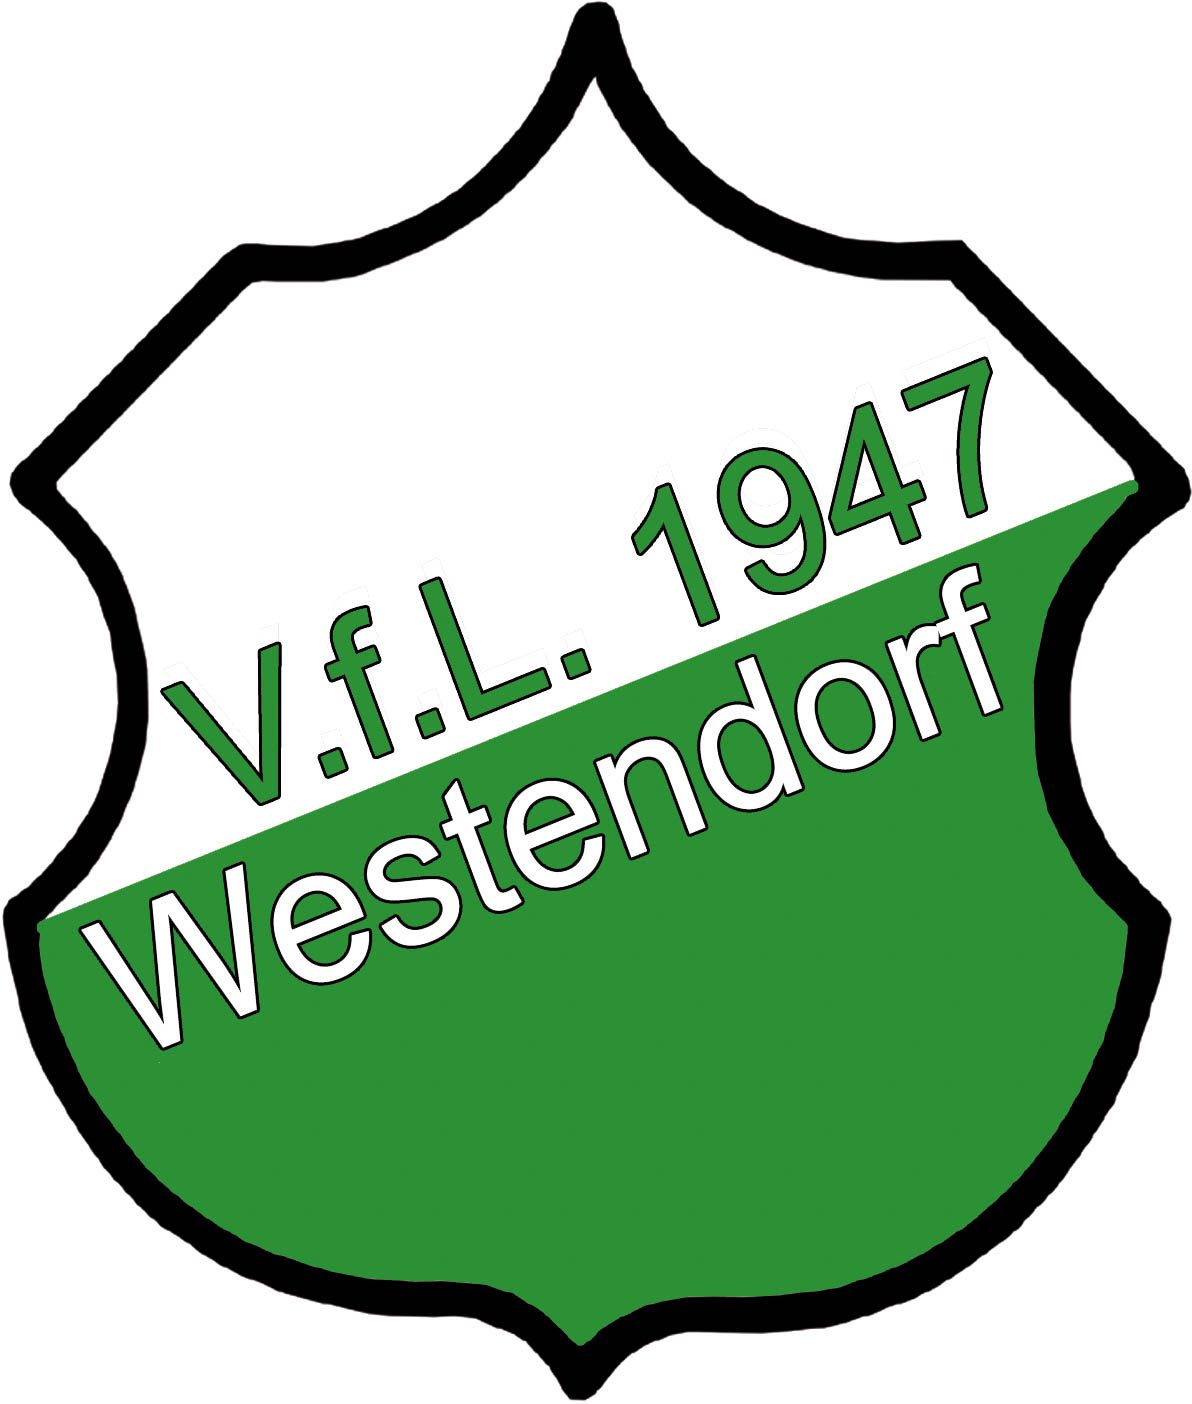 V.f.L. Westendorf 1947 e.V.